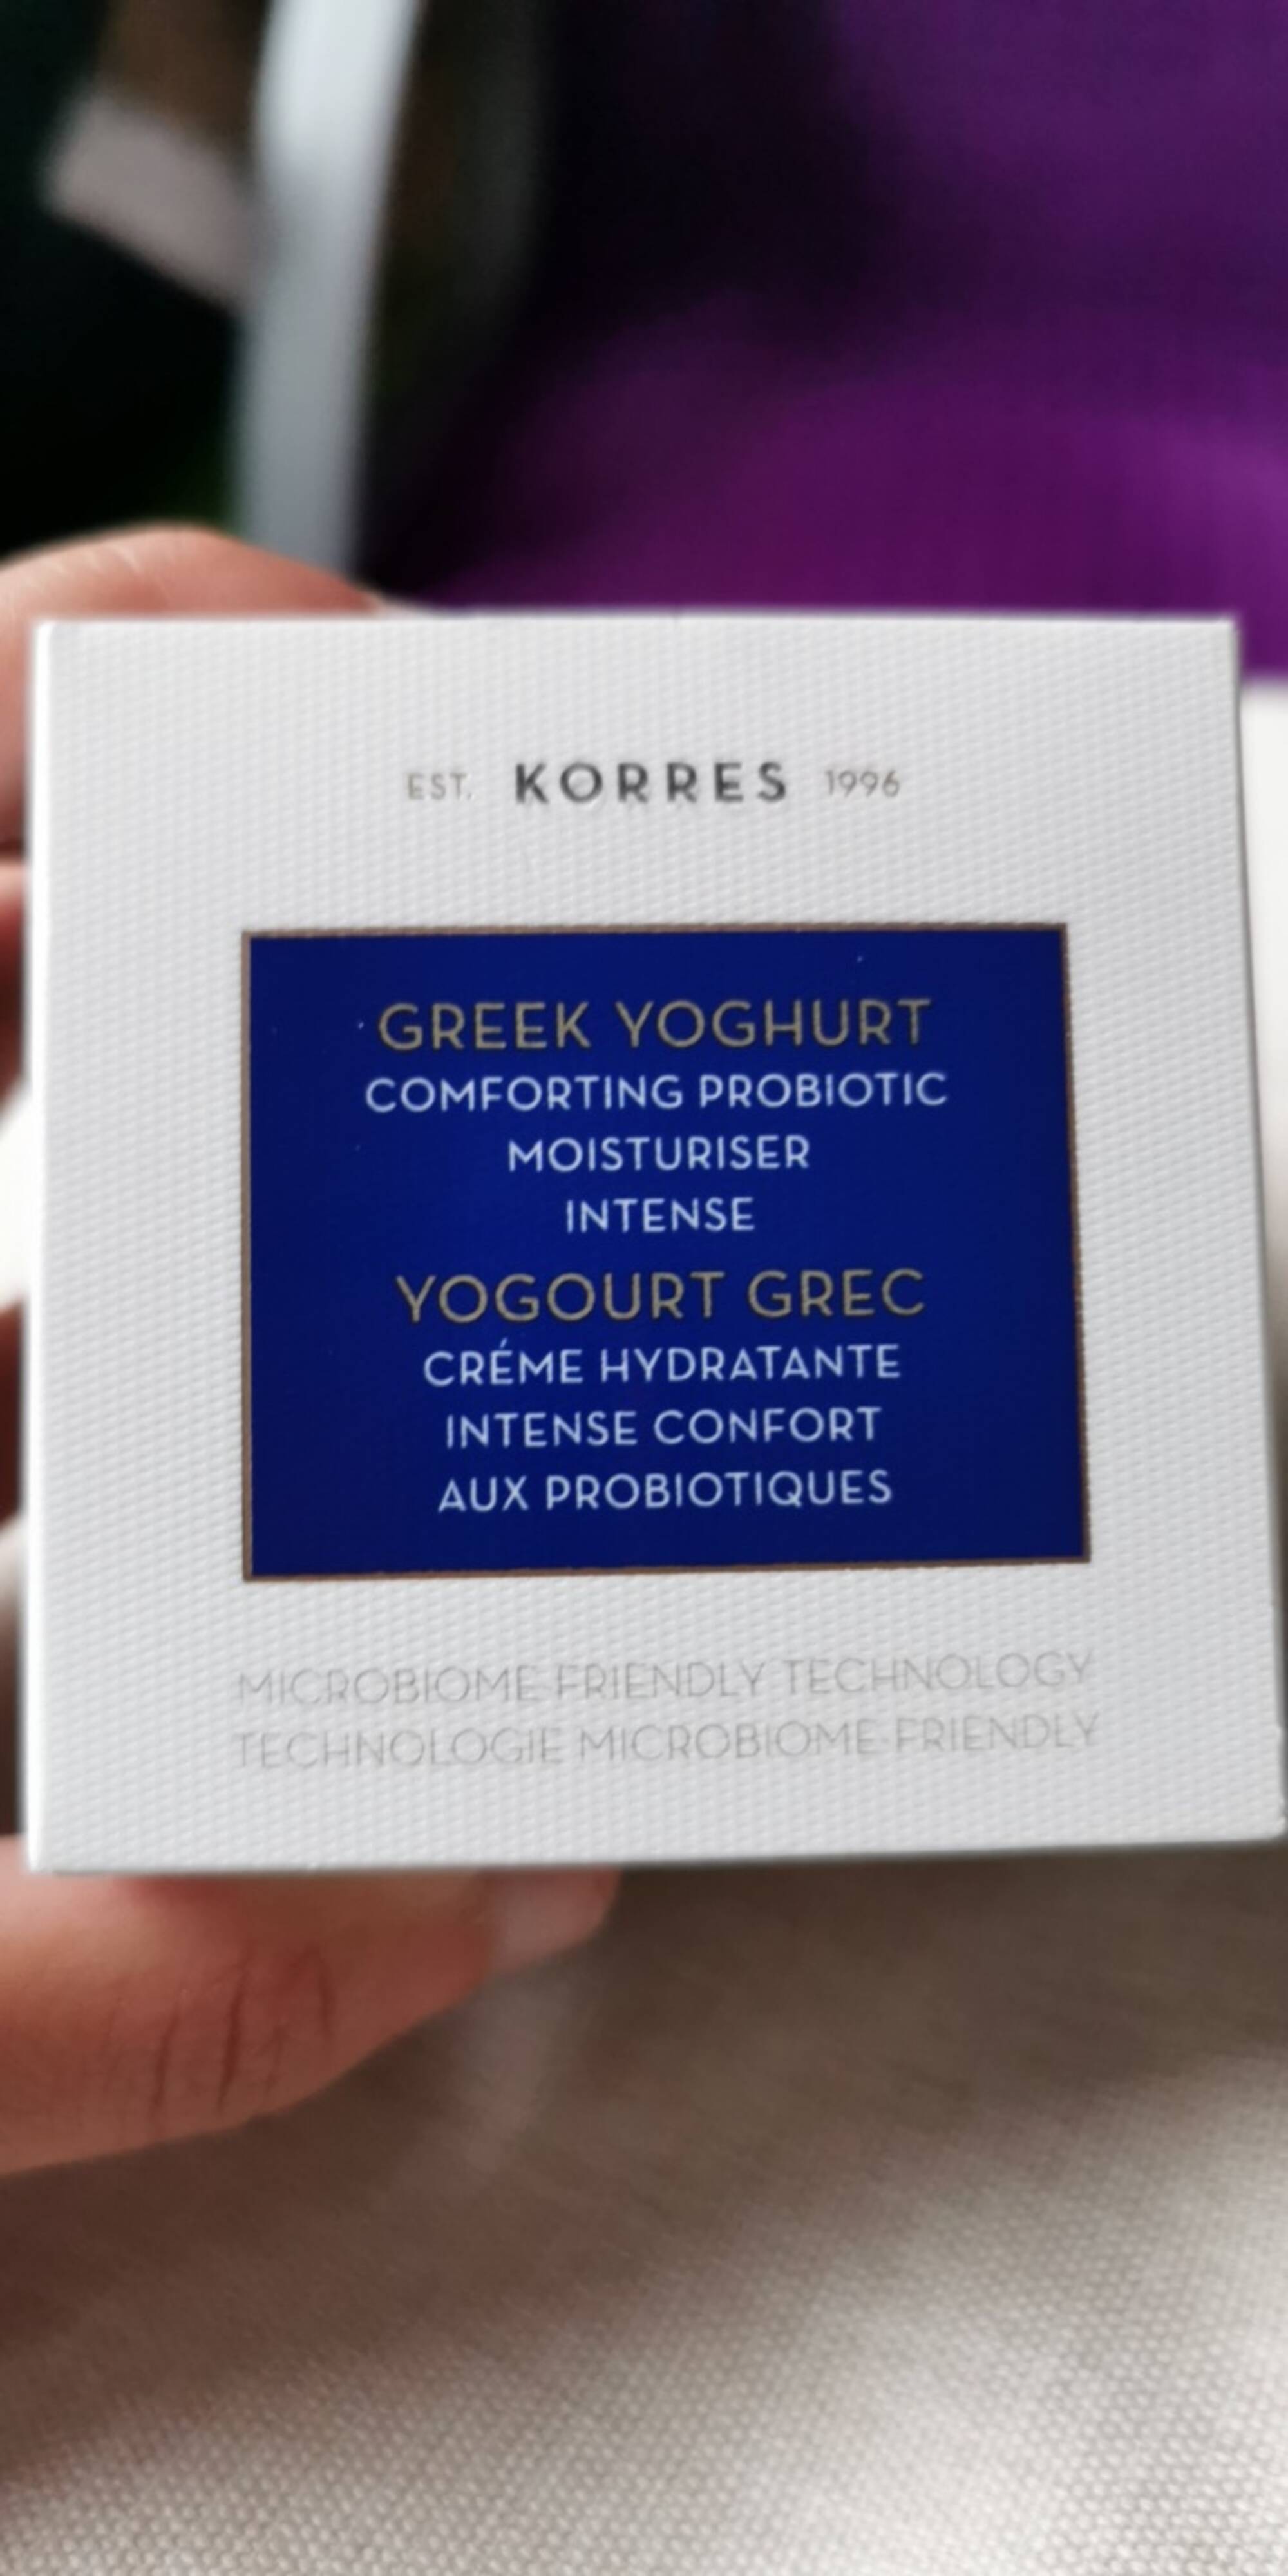 KORRES - Yogourt grec - Crème hydratante intense confort aux probiotiques